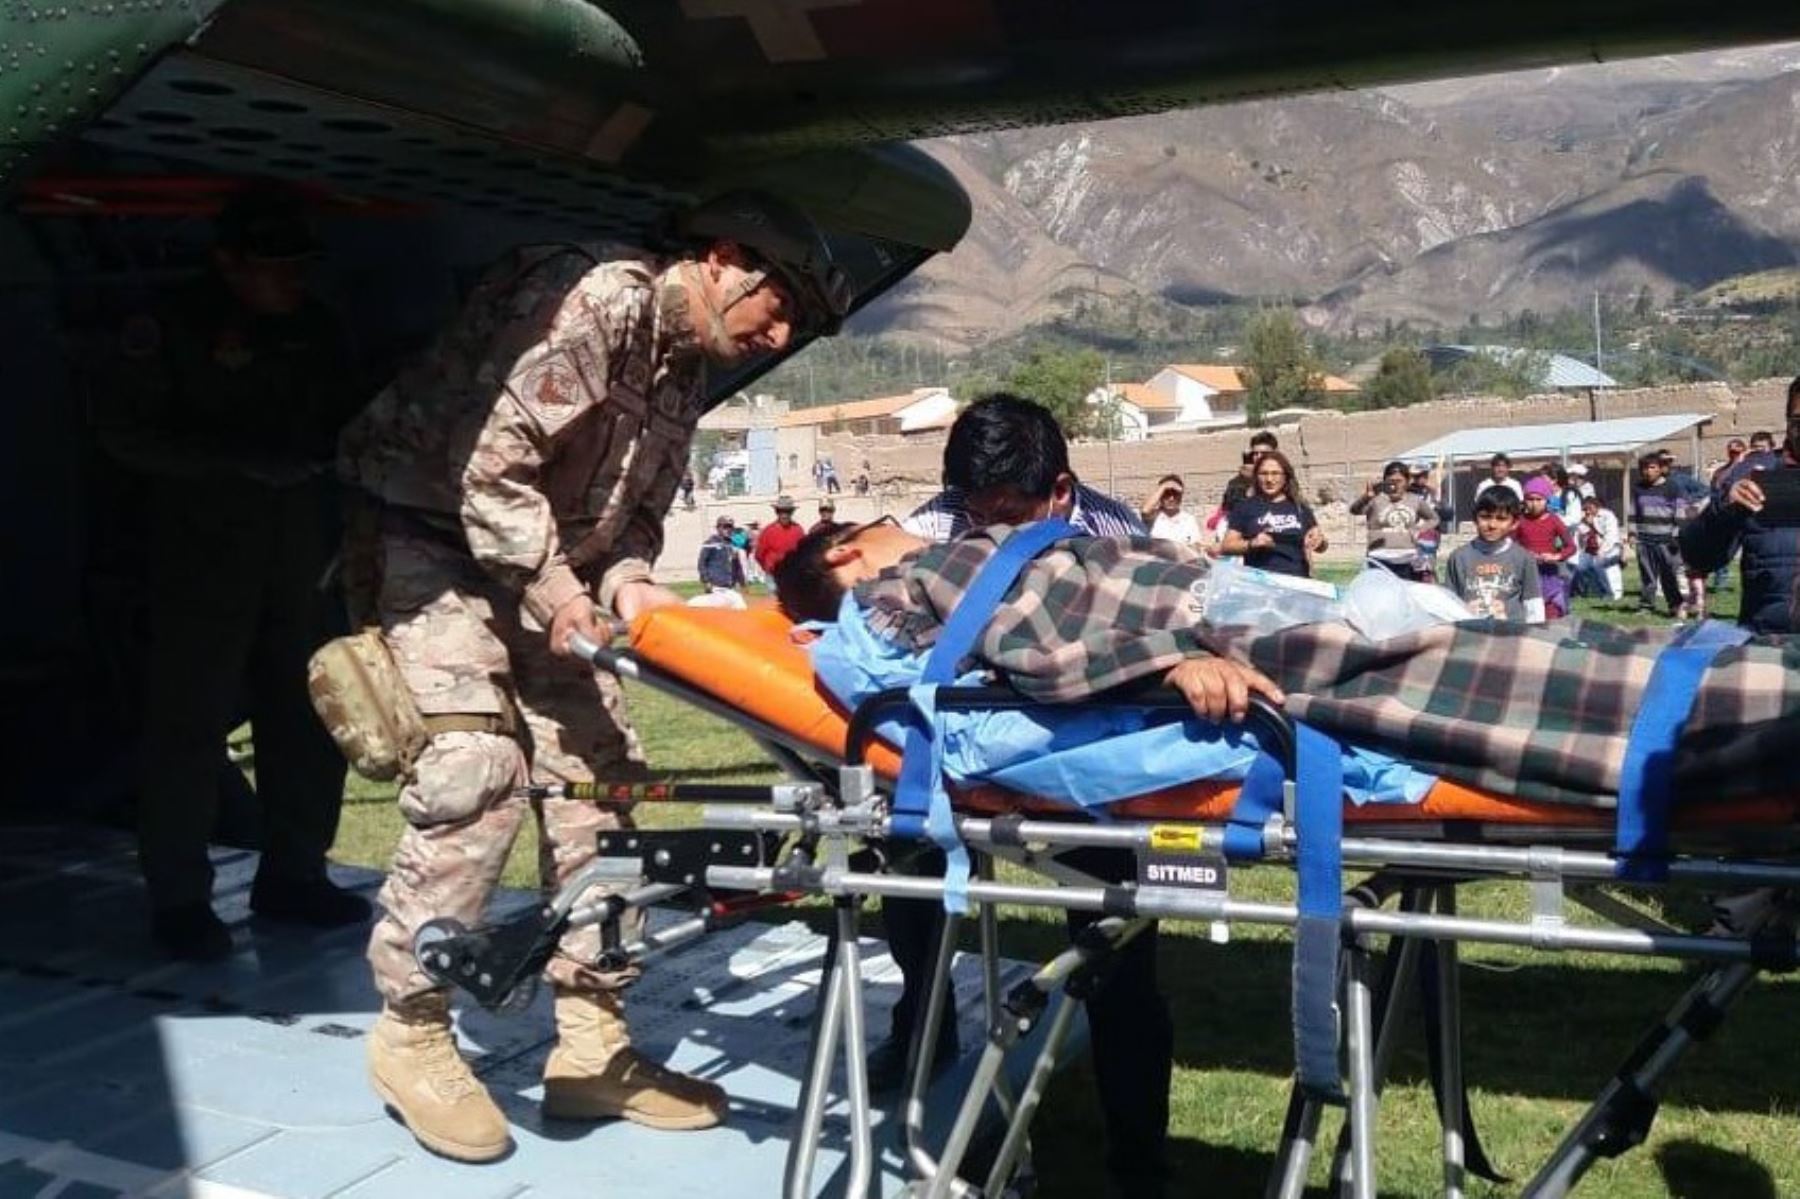 En un helicóptero de la Fuerza Aérea Peruana (FAP) se trasladó desde la localidad ayacuchana de Pauza, hacia Arequipa, a las ocho personas en estado grave tras sufrir una intoxicación por alimentos, informó el Instituto Nacional de Defensa Civil (Indeci).